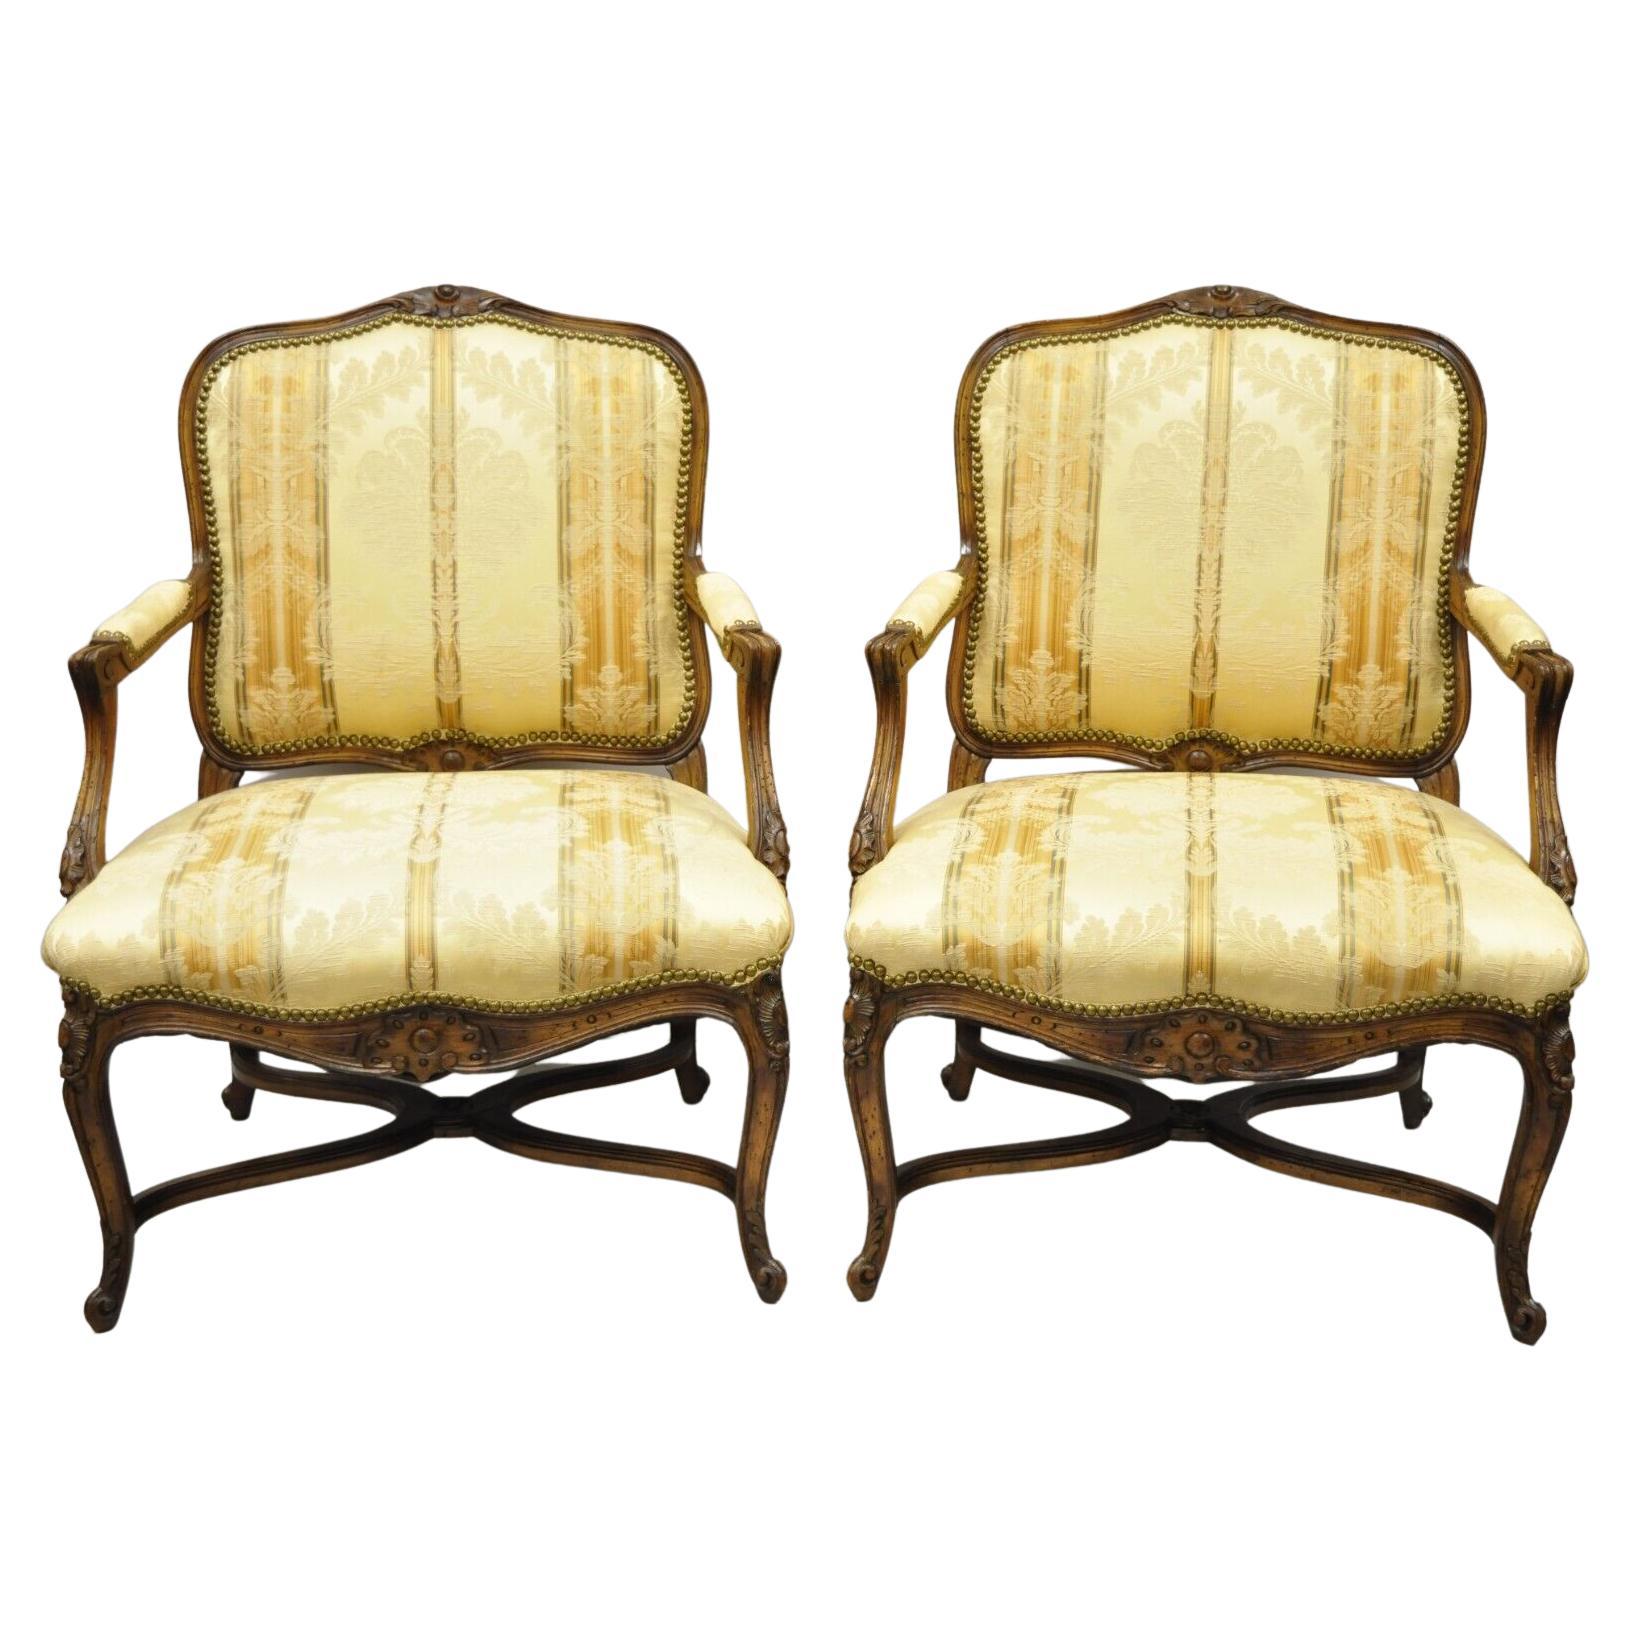 Vintage Französisch Provincial Louis XV Landhausstil Lounge Stühle - ein Paar